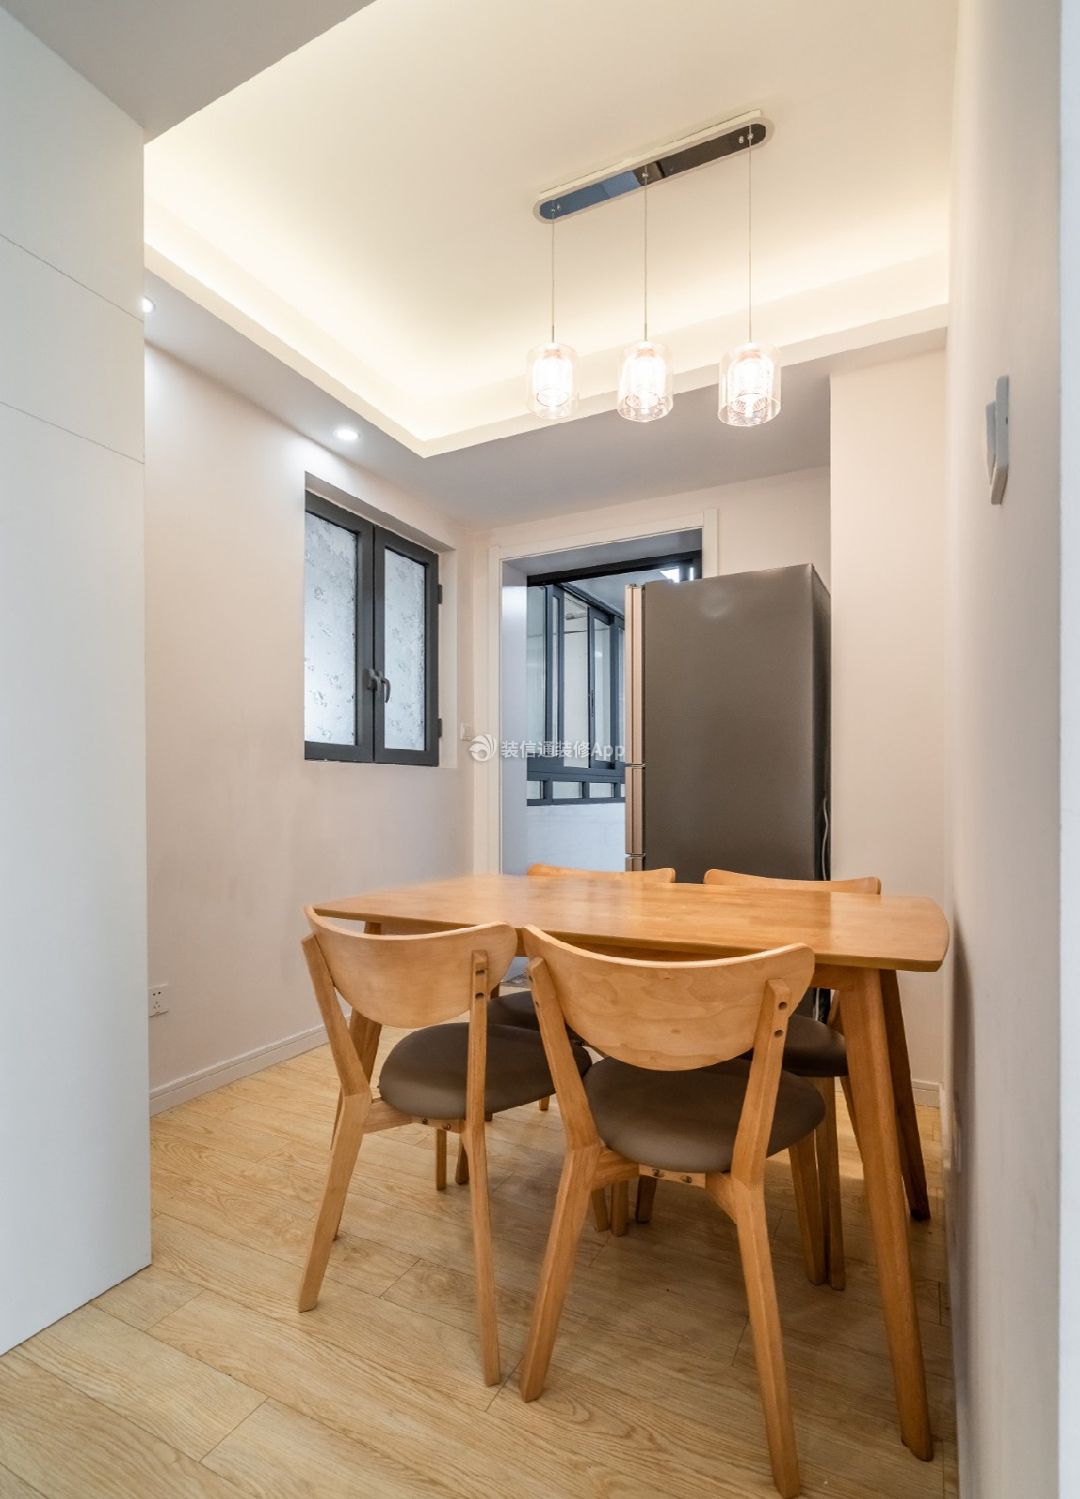 60平米两室一厅小户型餐厅实木餐桌图片: